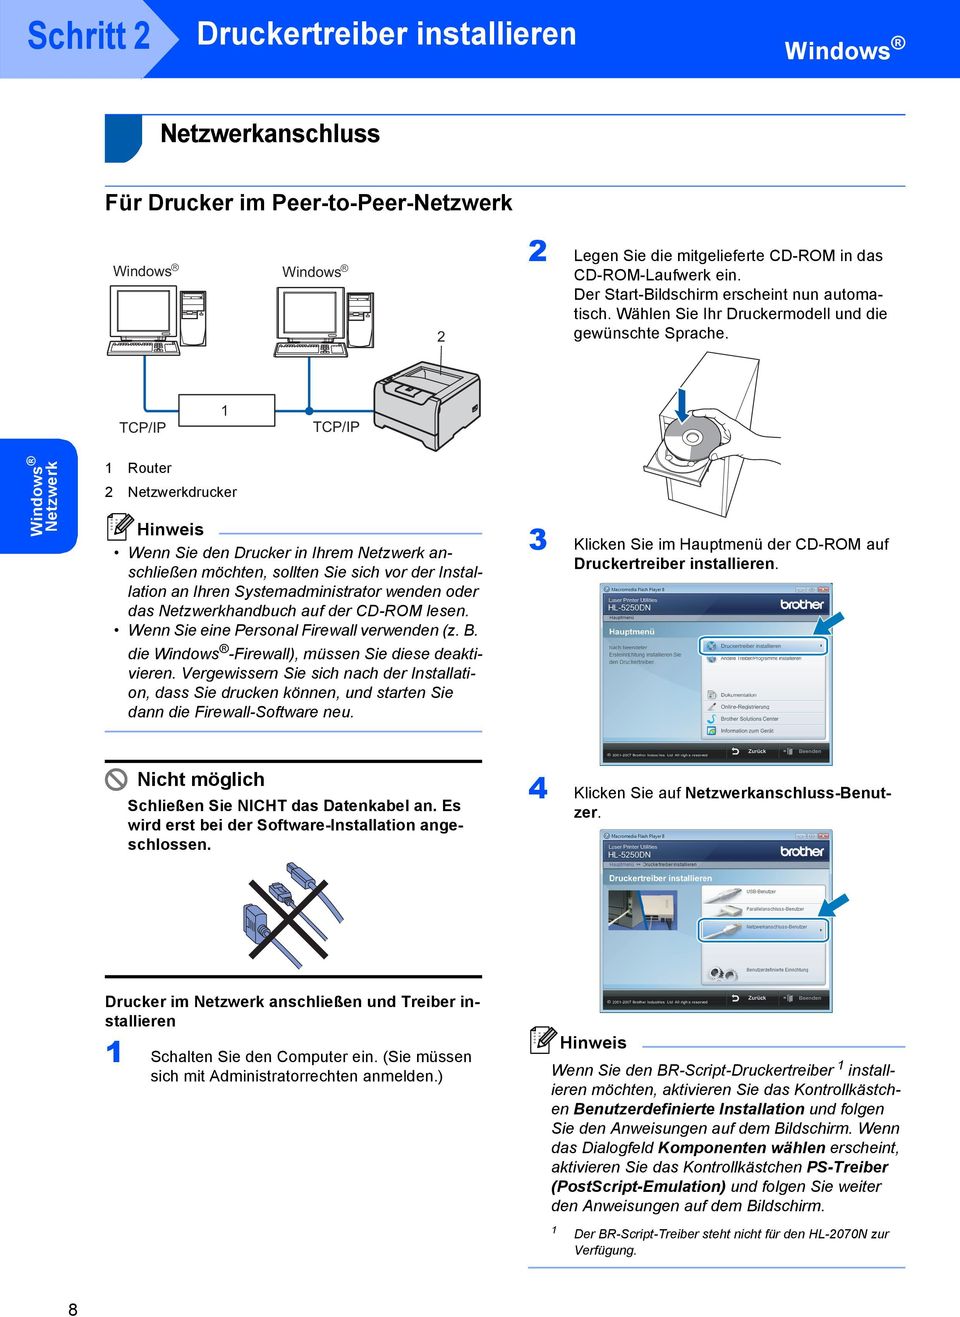 TCP/IP TCP/IP Netzwerk Router 2 Netzwerkdrucker Wenn Sie den Drucker in Ihrem Netzwerk anschließen möchten, sollten Sie sich vor der Installation an Ihren Systemadministrator wenden oder das